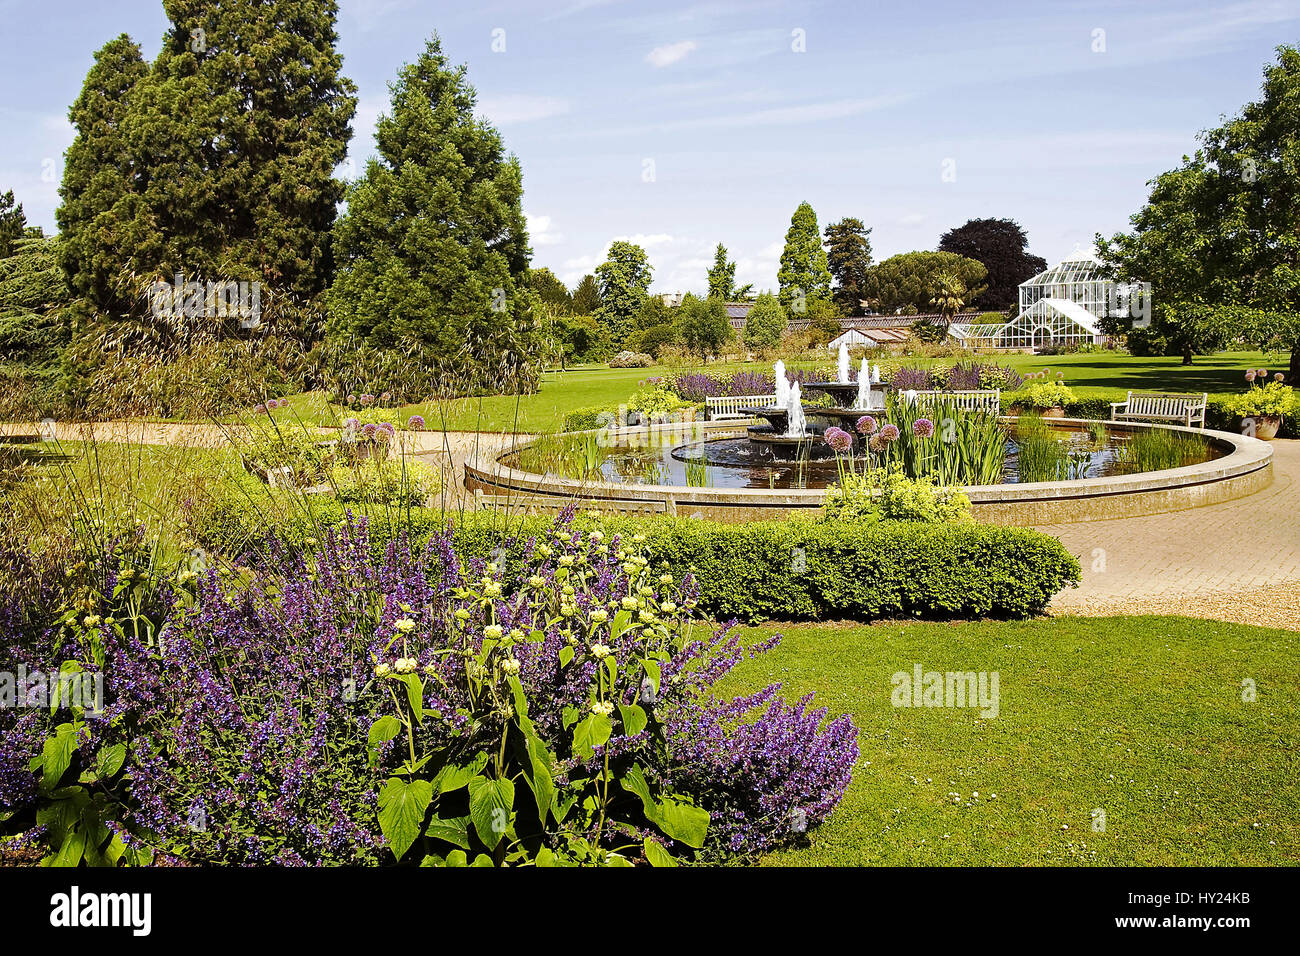 Im bekannten Botanischen Garten der Universitaetsstadt Cambridge in England. Stock Photo